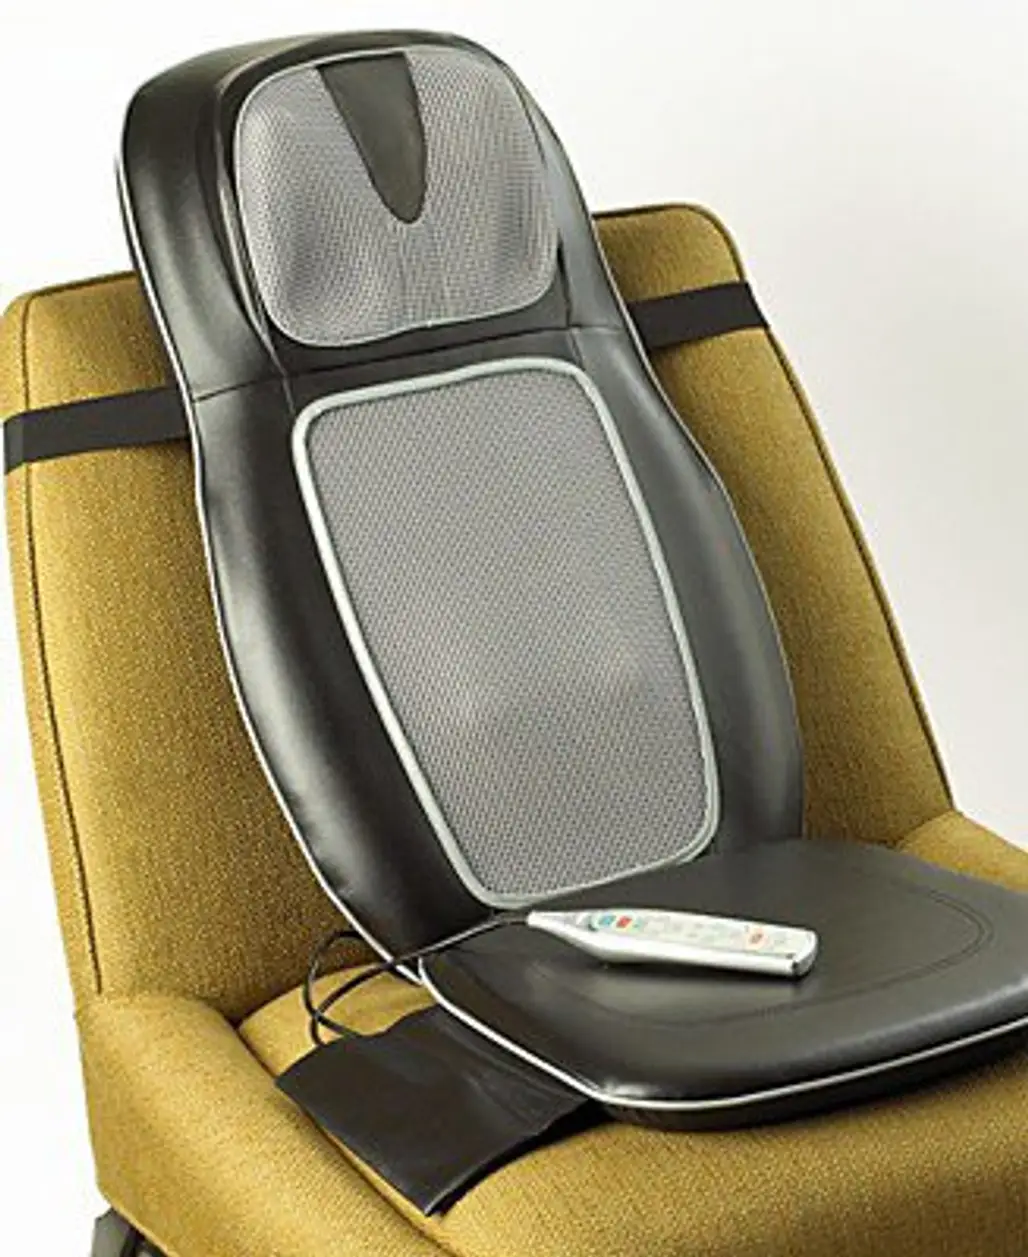 HoMedics Therapist Select Shiatsu One Massaging Cushion